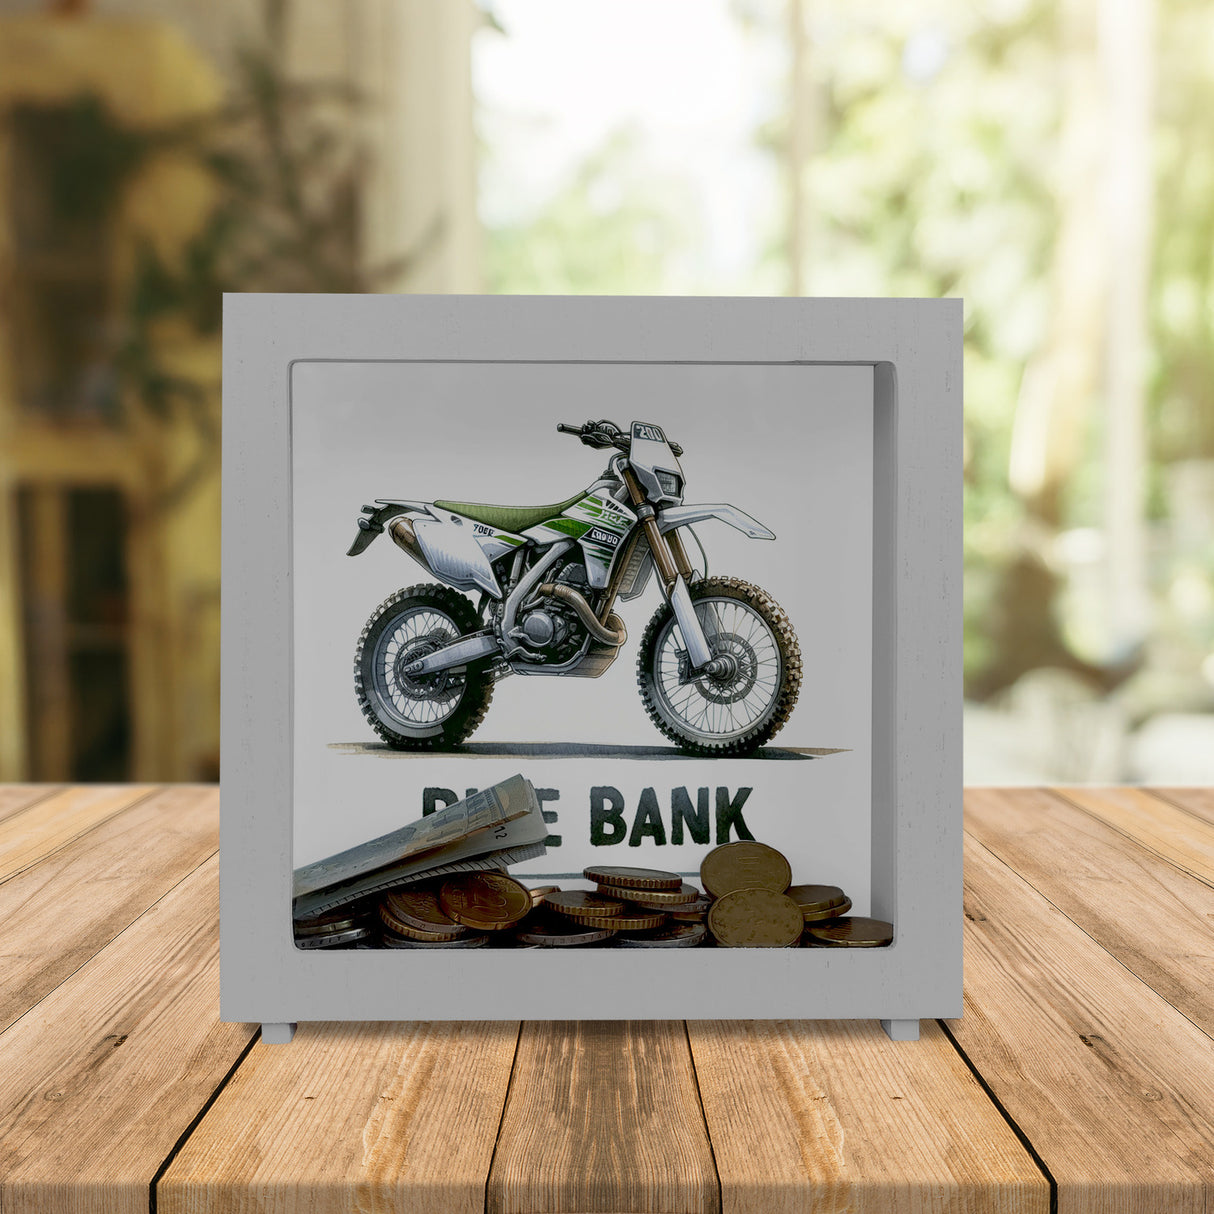 Enduro Motorrad Spardose mit Spruch Bike Bank